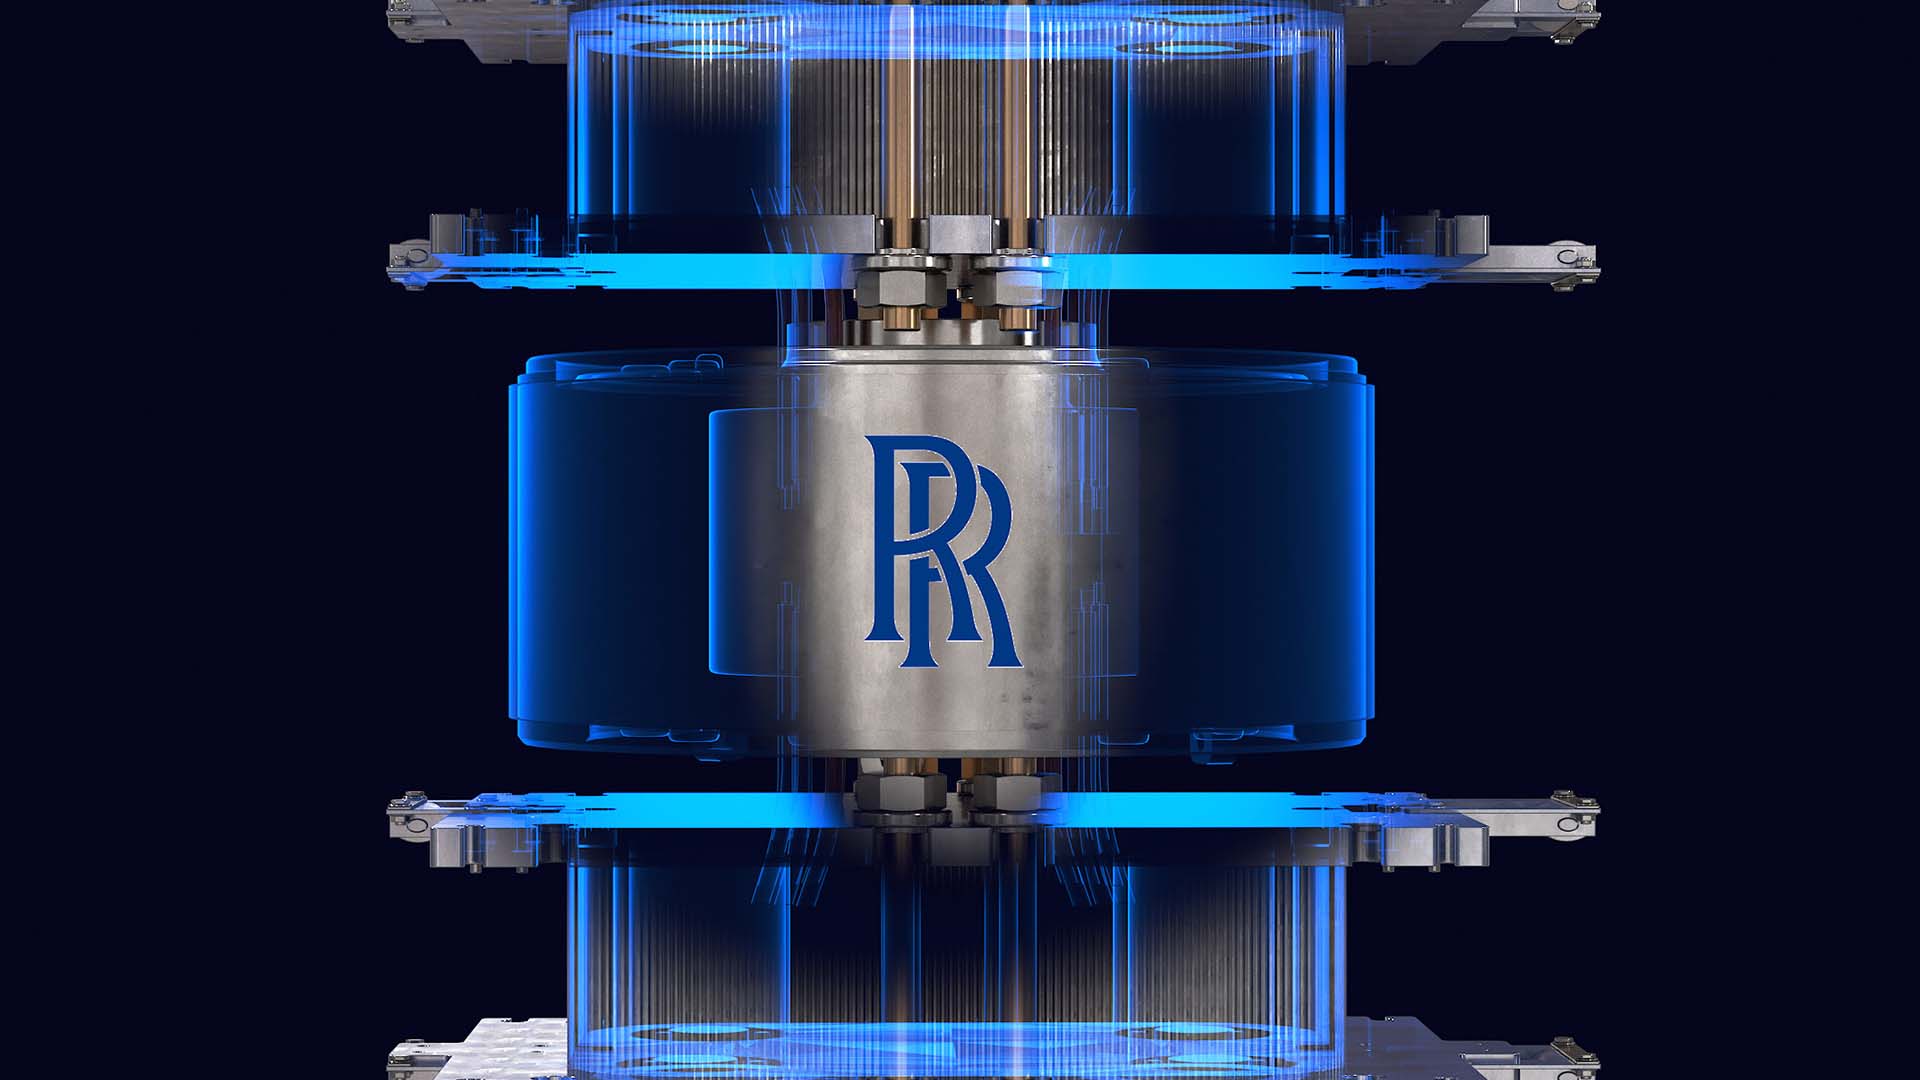 Rolls-Royce's nuclear microreactor